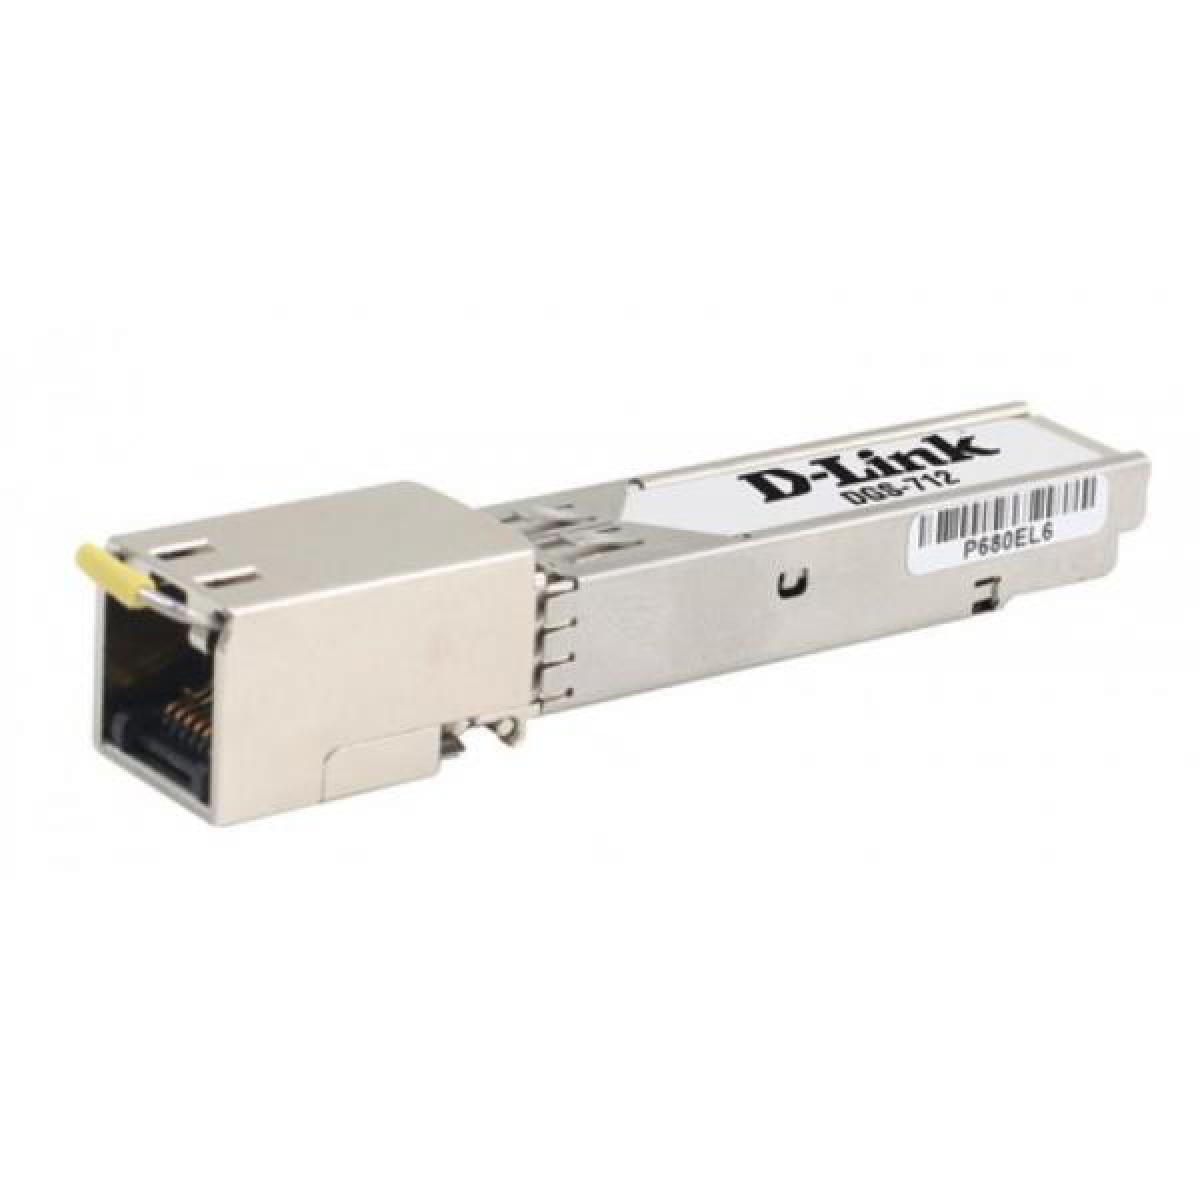 D-Link - Modulo D-link Minigbic 1 Puerto 1000base-t Copper - Bracelet connecté